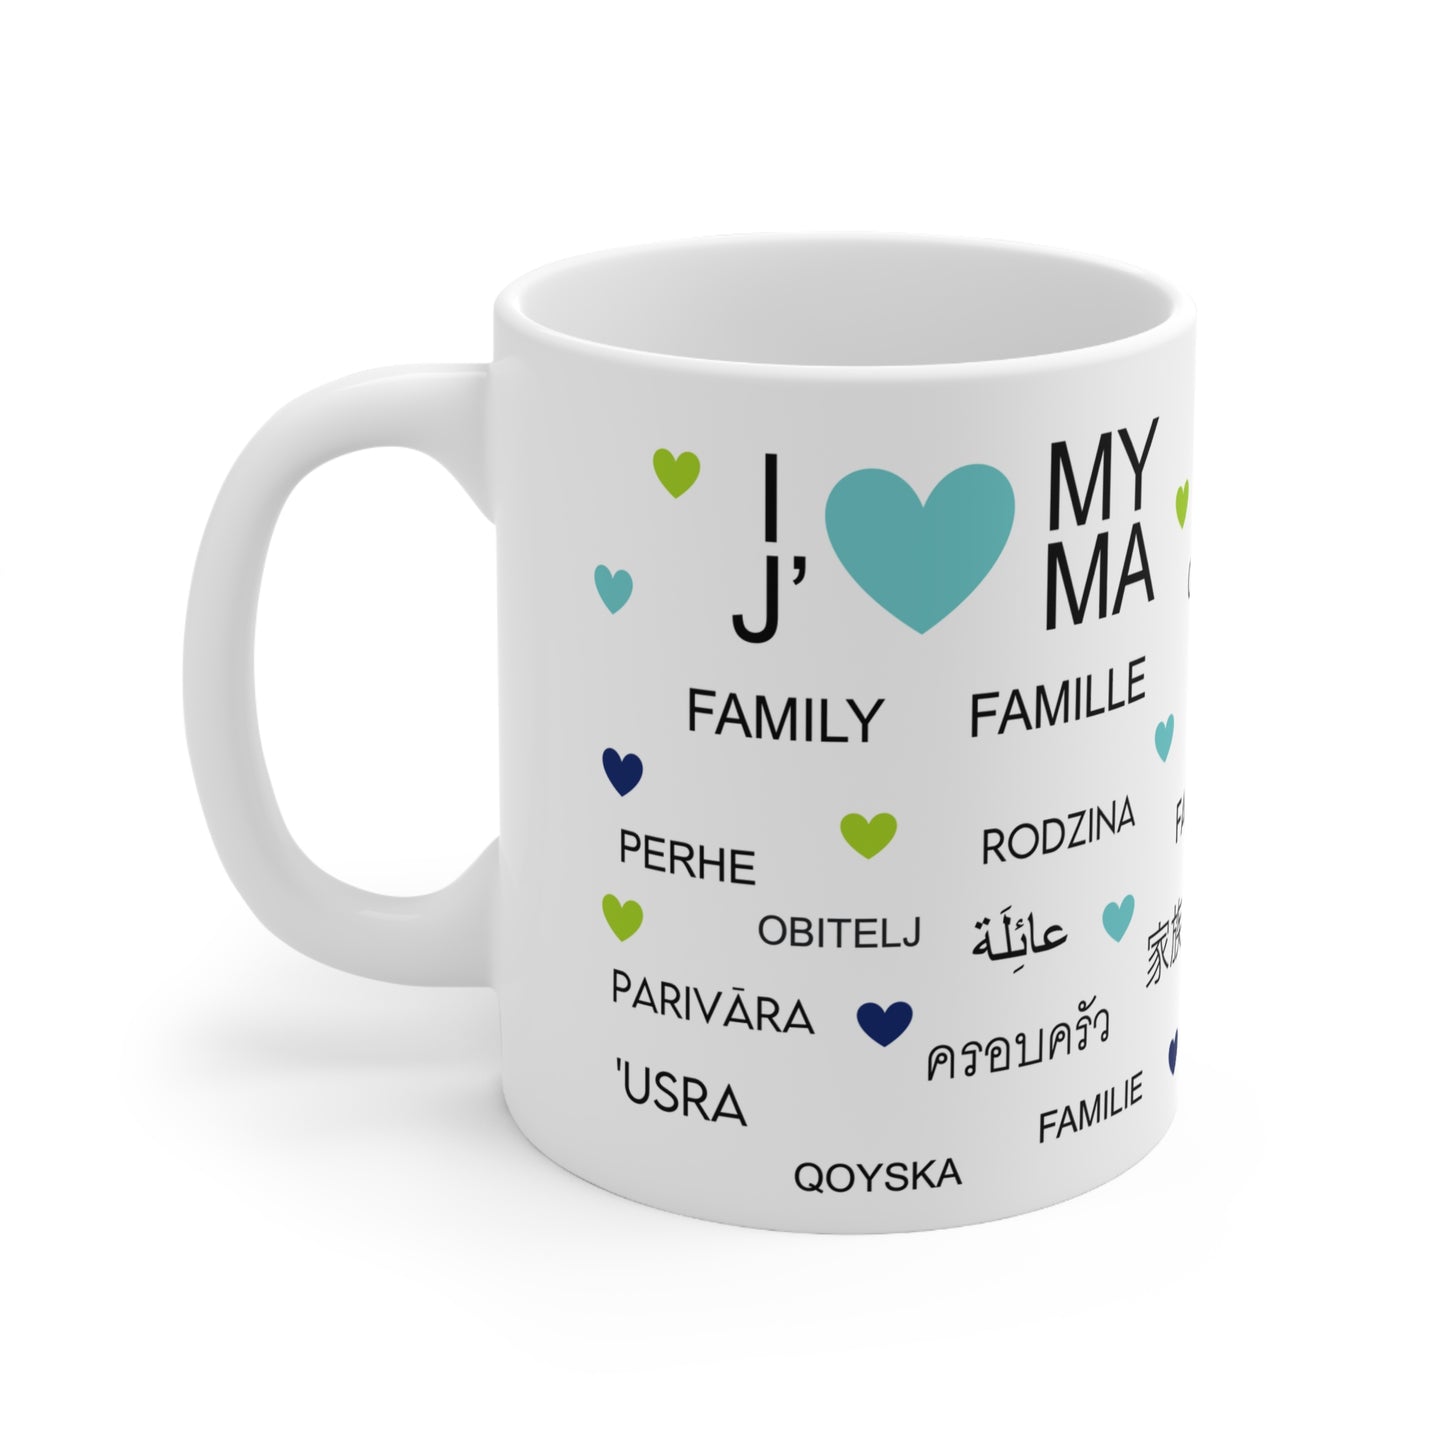 I Love My Family Ceramic Mug 11oz